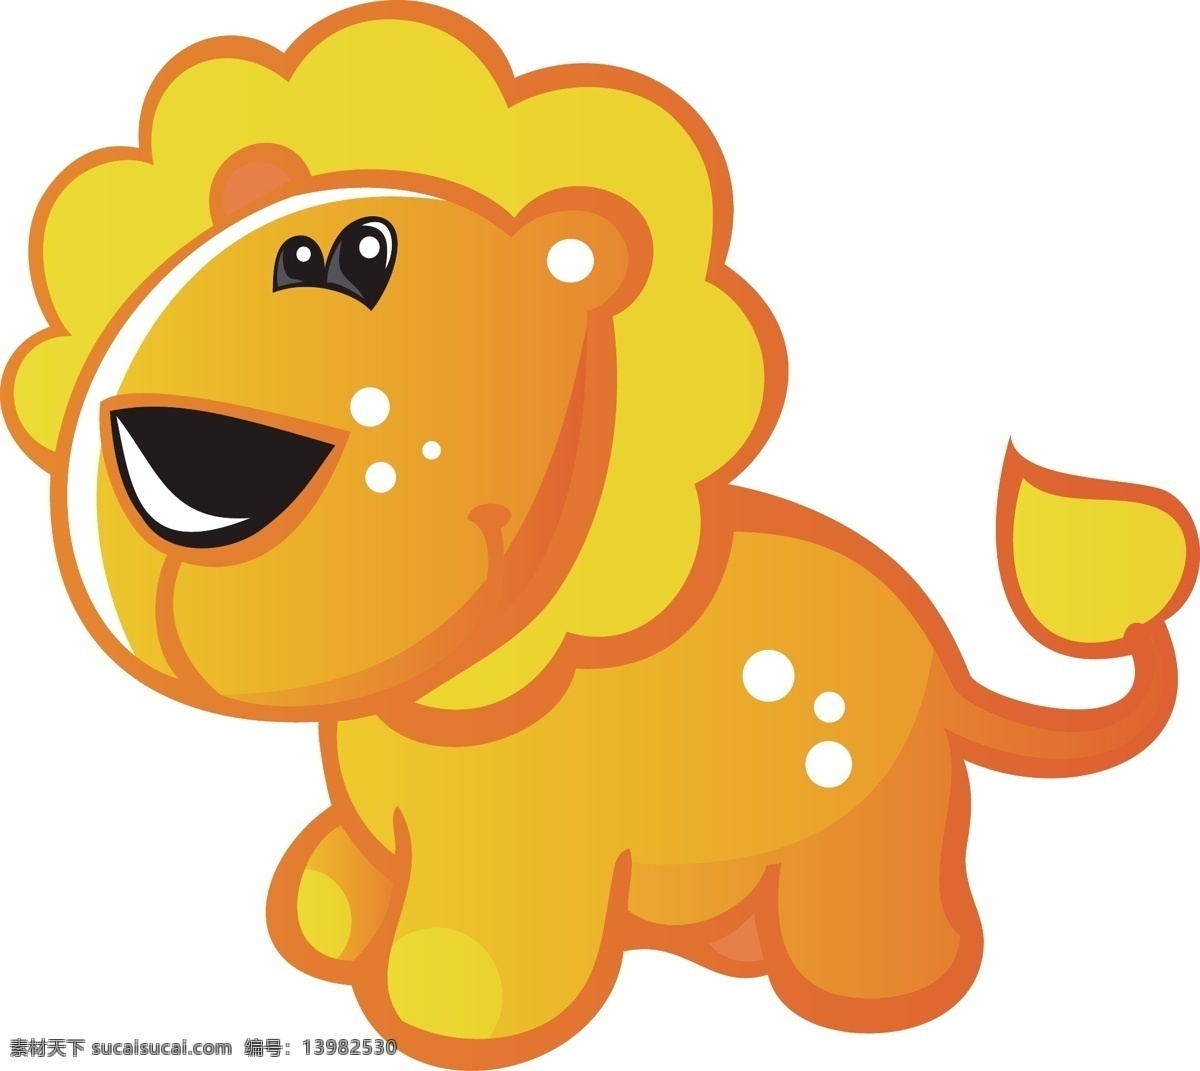 狮子 动物 卡通 宝宝 生物 球 圆 可爱 动漫动画 动漫人物